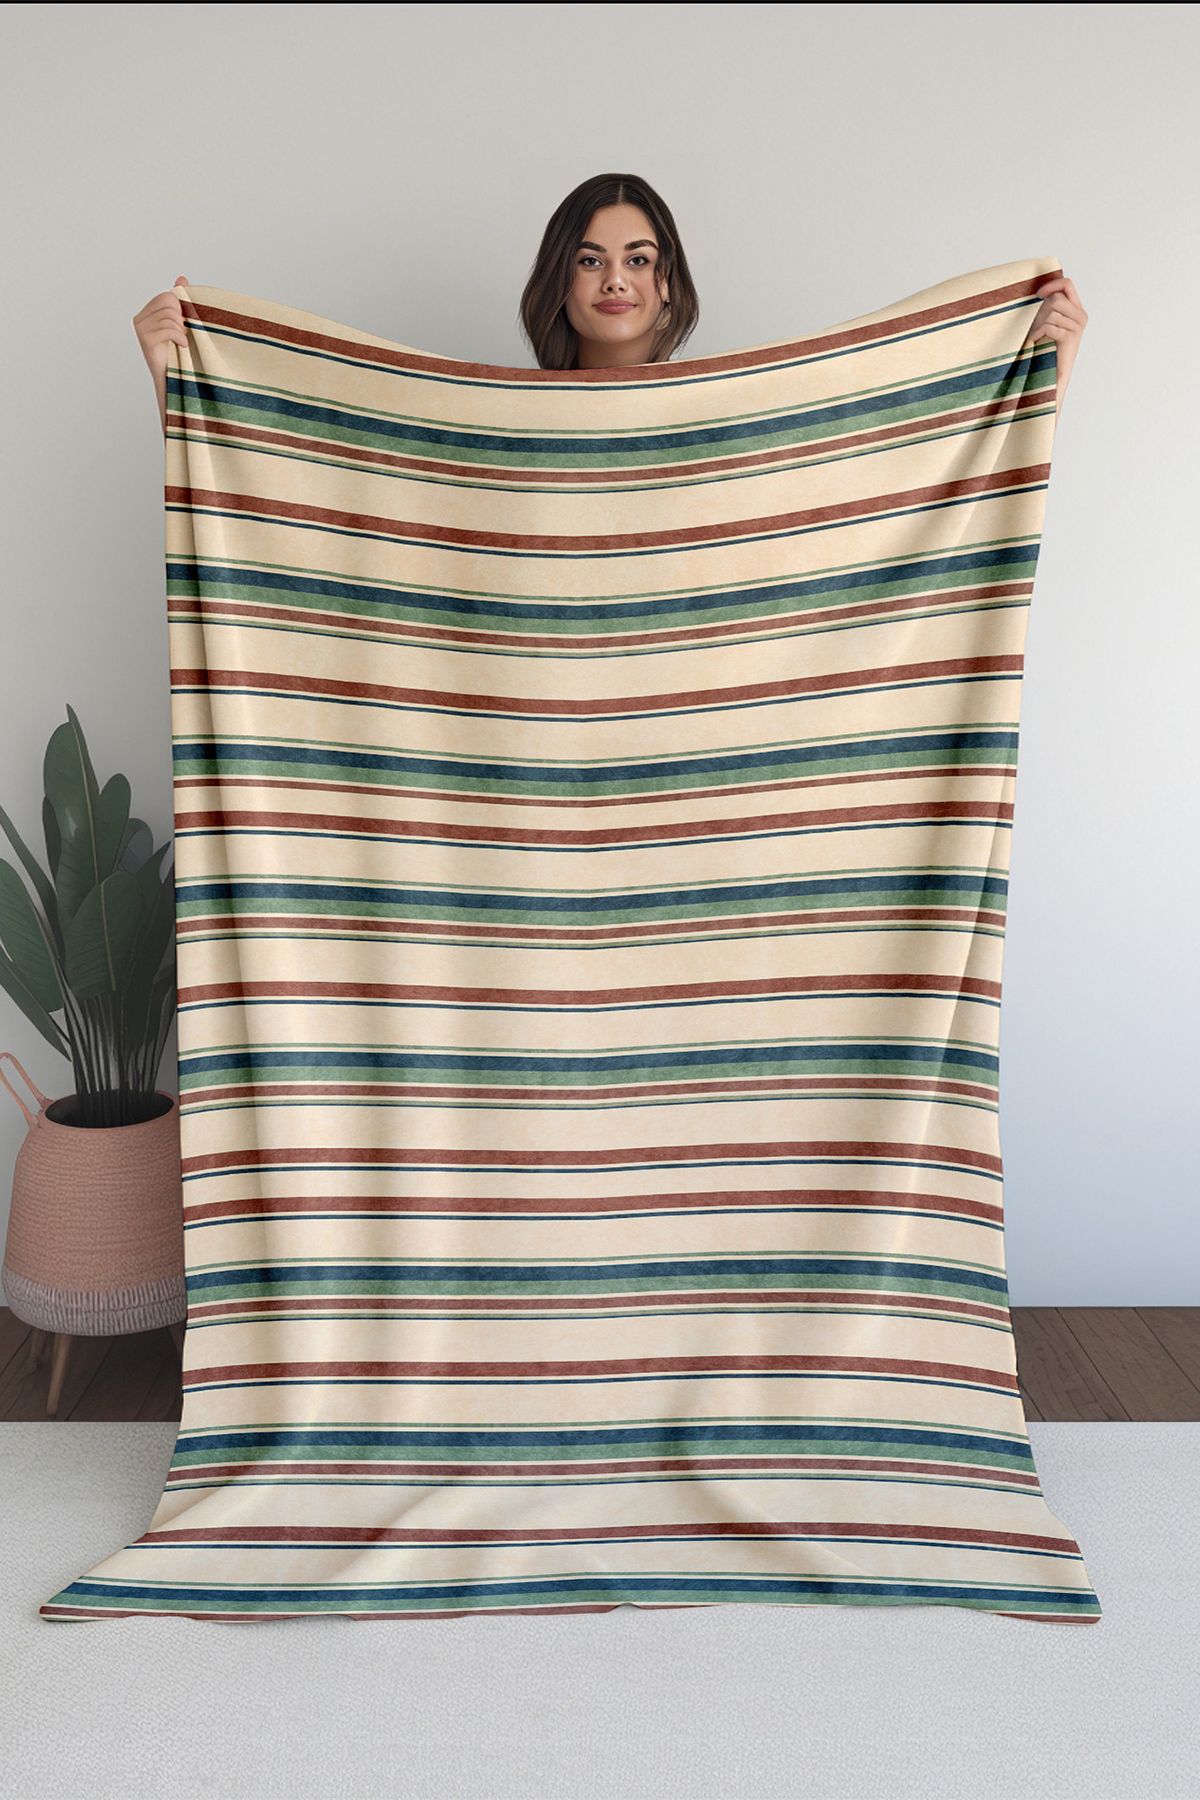 Homefesto Baskılı Polar Renkli Battaniye Tv Battaniyesi Makinede Yıkanabilir Battaniye Blanket011